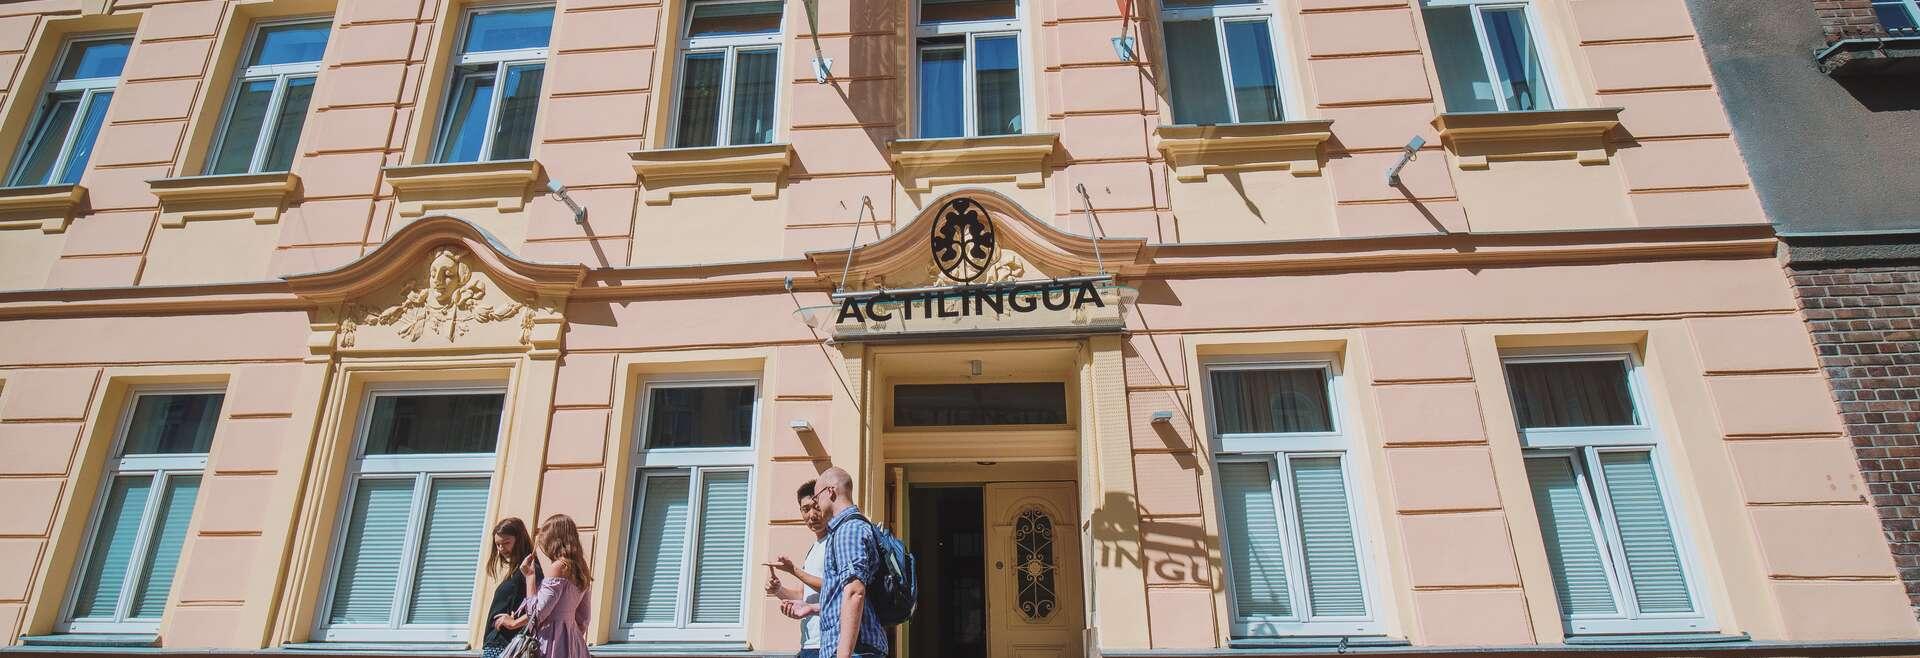 Séjour linguistique Austriche, Wien - Actilingua Academy Vienna - École 